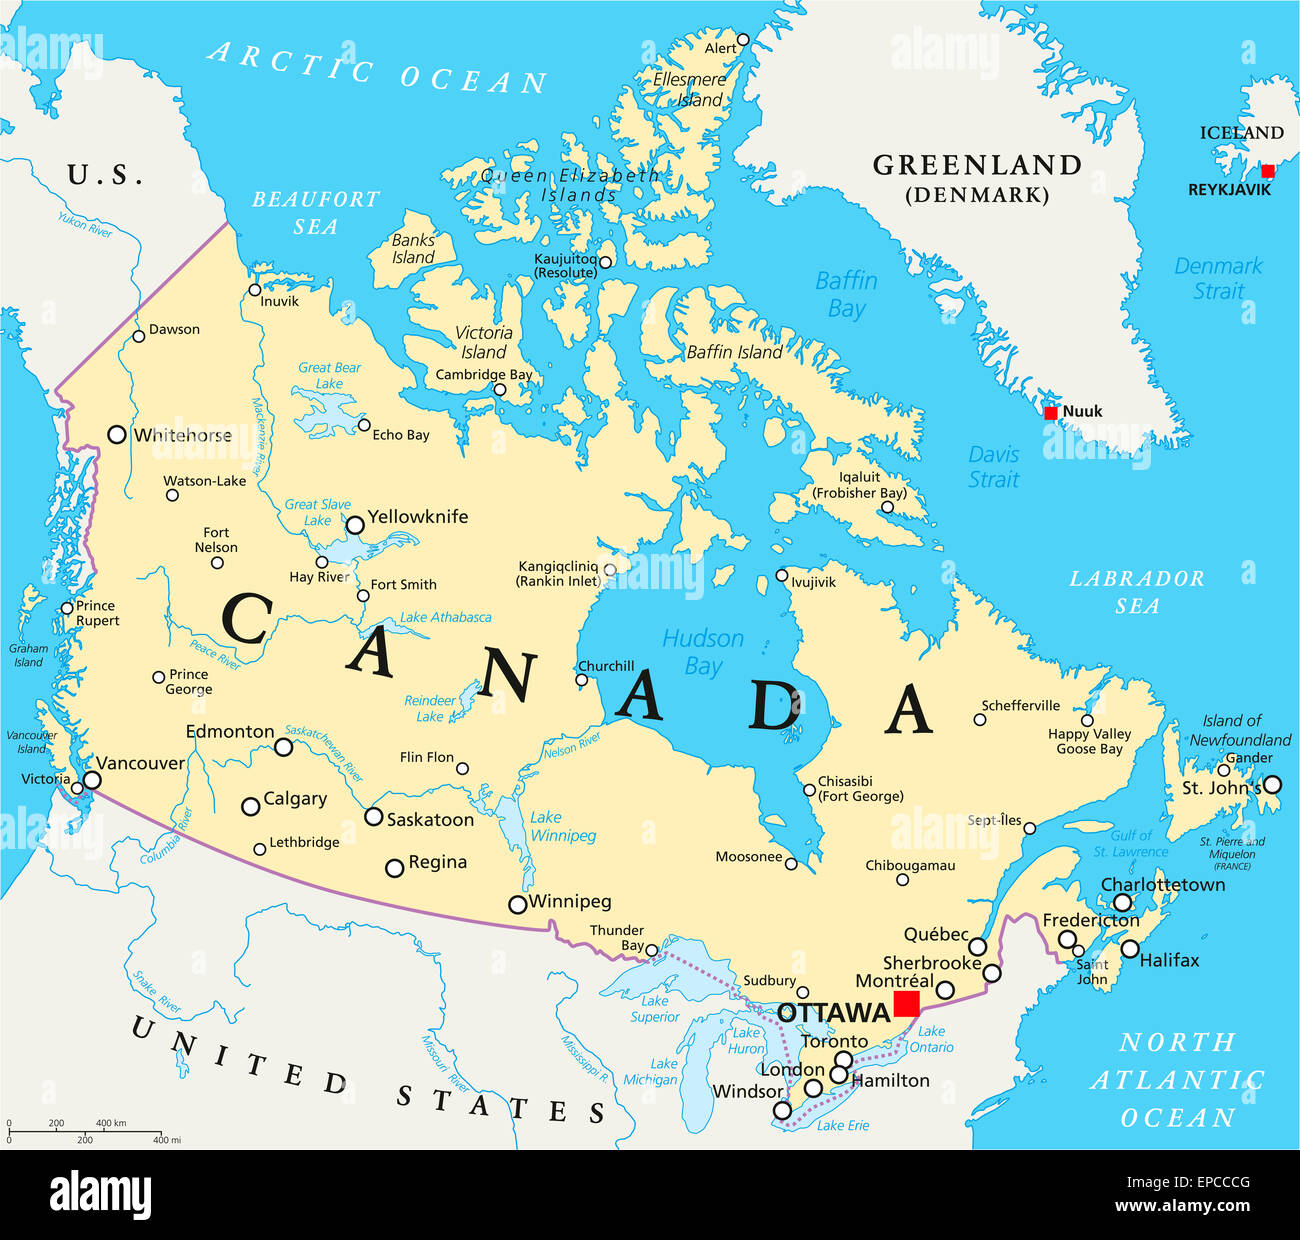 Kanada politische Karte mit Hauptstadt Ottawa, Landesgrenzen, wichtige Städte, Flüsse und Seen. Englische Beschriftung und Skalierung. Stockfoto